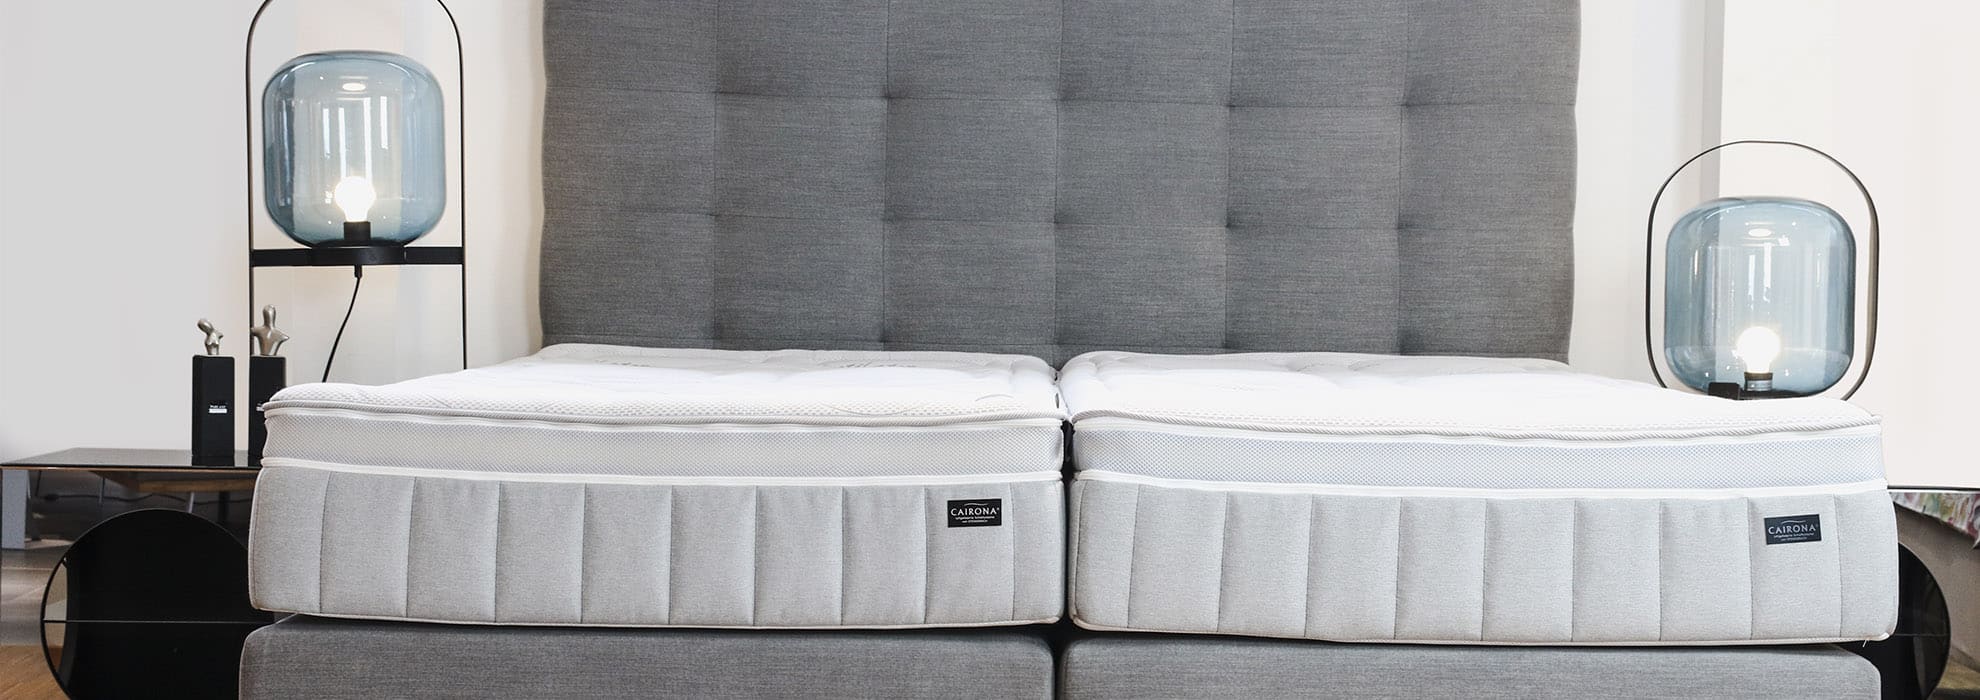 Luftbetten – ergonomischer Komfort für einen erholsamen Schlaf